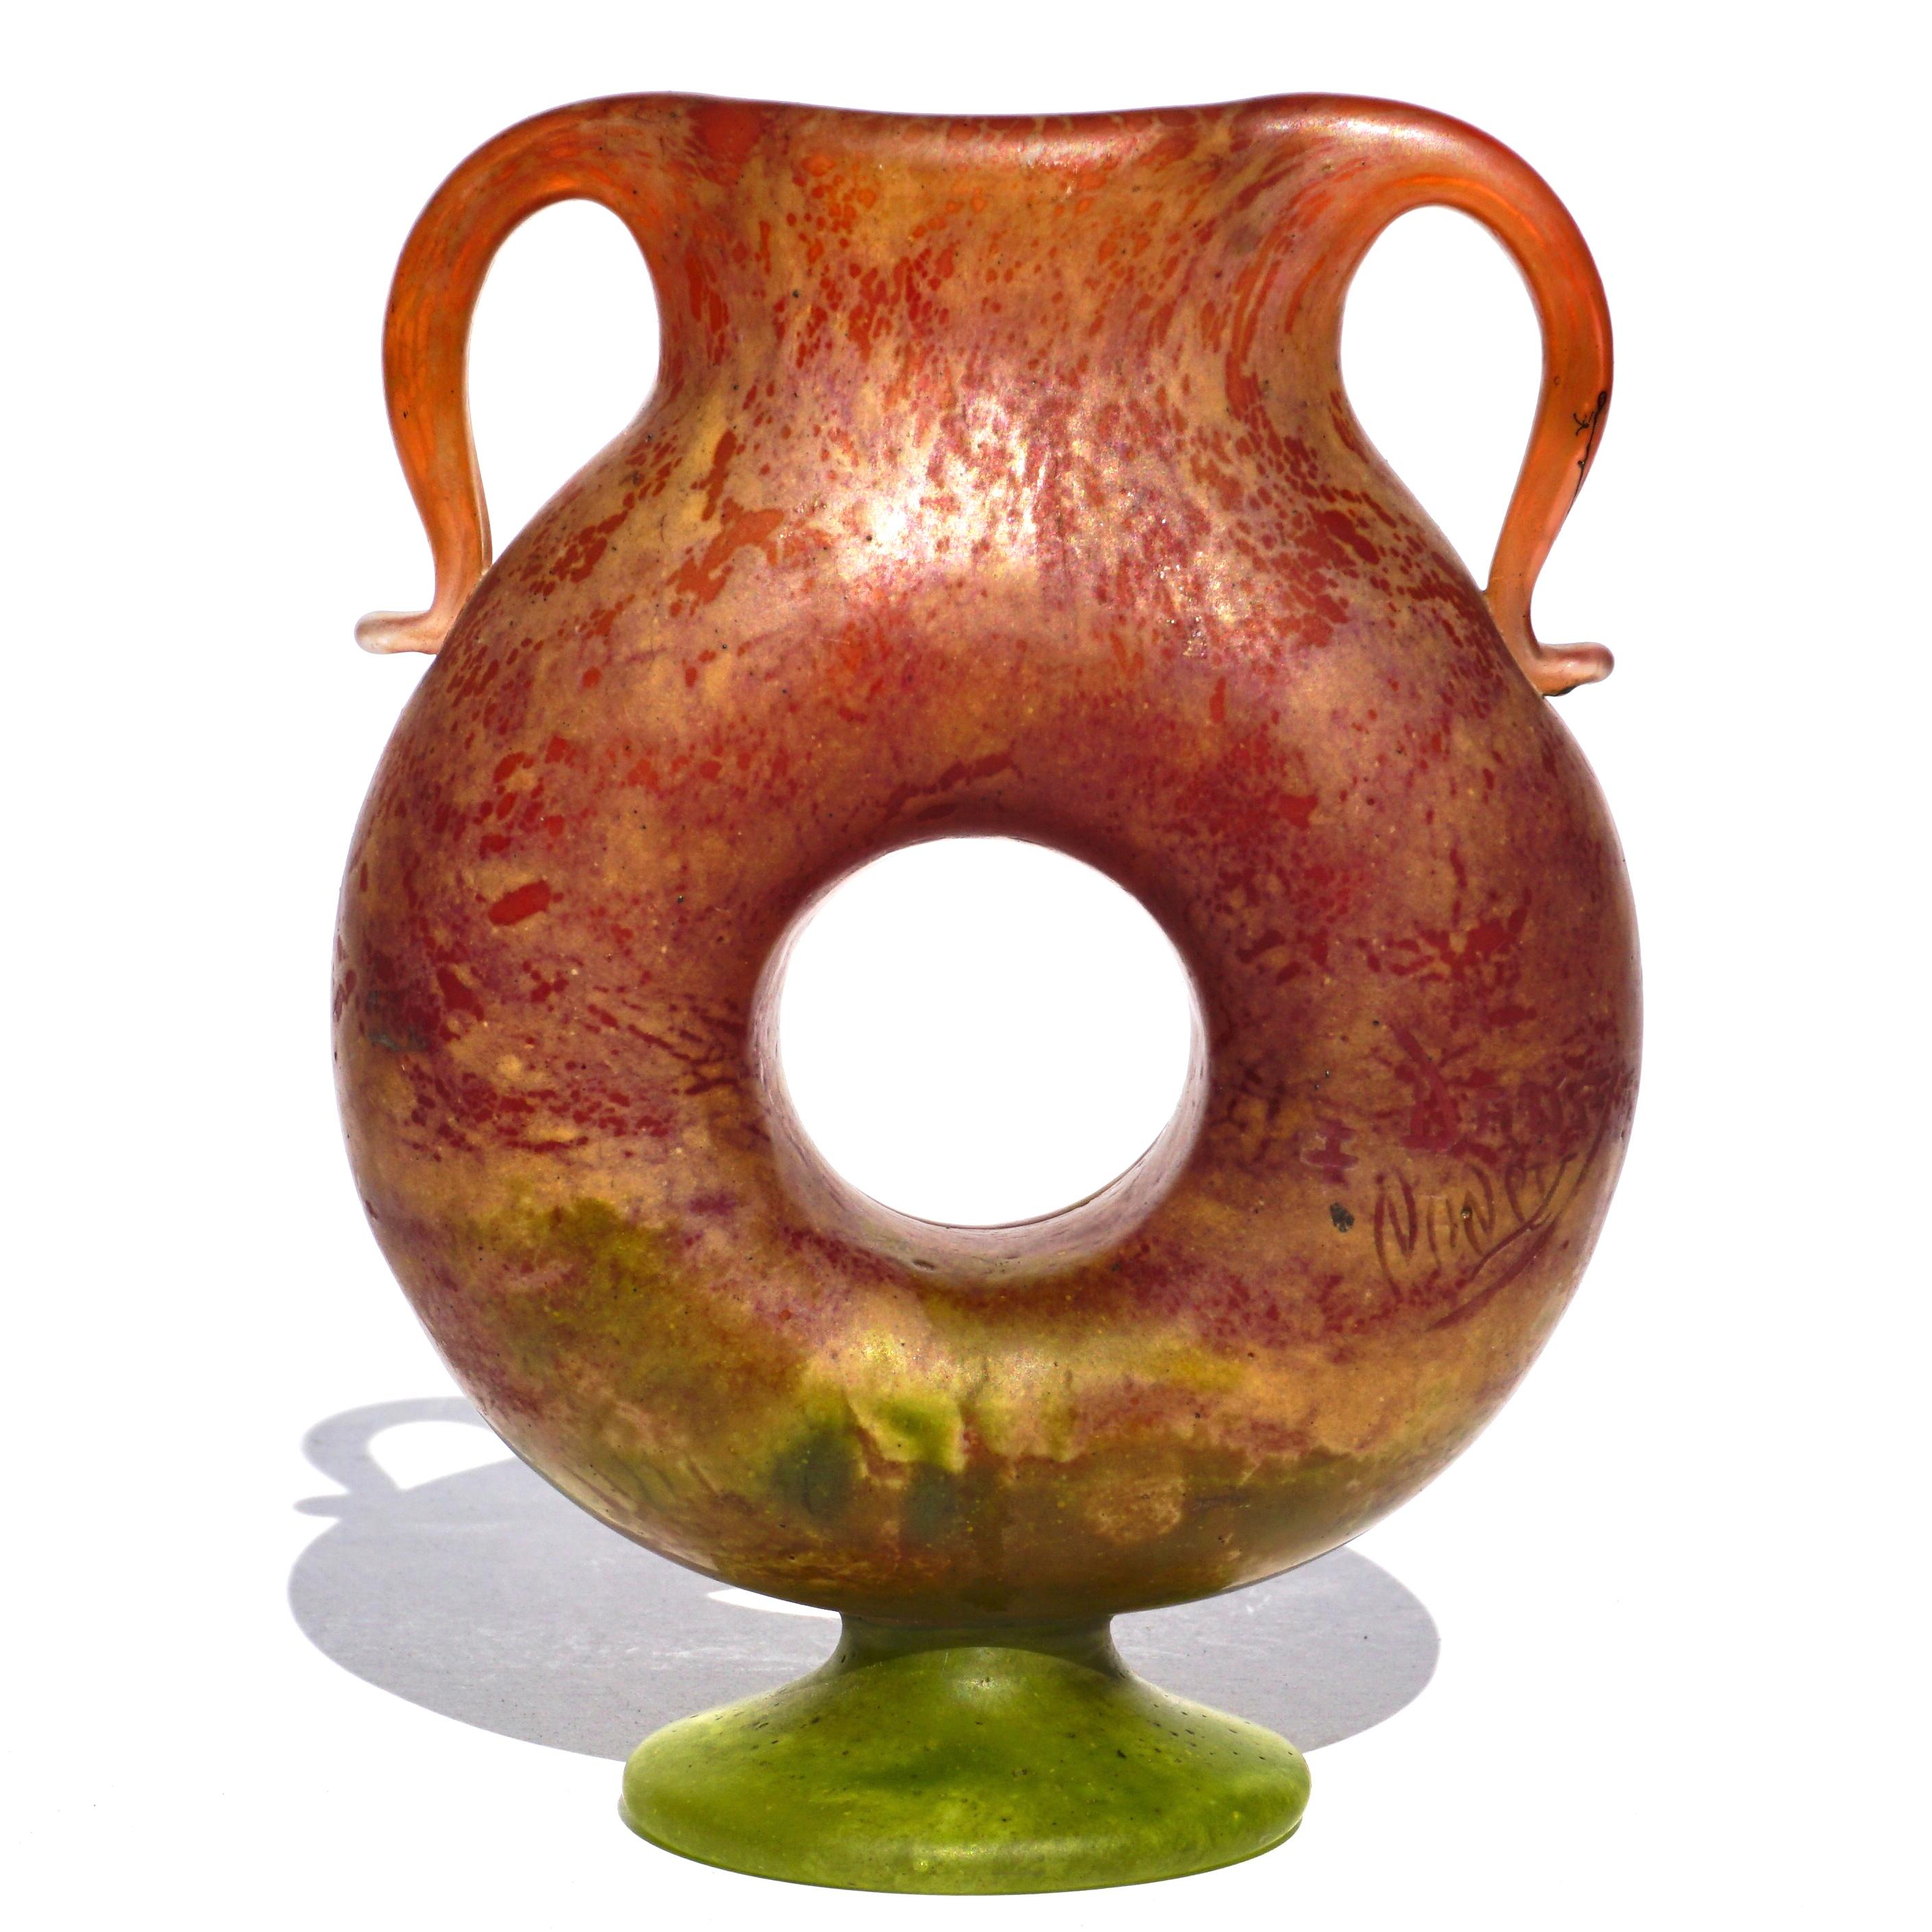 Daum Nancy Jugendstil Vase mit Fuß und appliziertem Henkel. Eine sehr seltene donutförmige Vase mit schönen applizierten Henkeln. Von Rot über Rosa und Creme bis hin zu Grün.

Höhe: 5 Zoll
Breite: 3,75 Zoll

Zustand: Neuwertig

Signiert Daum Nancy